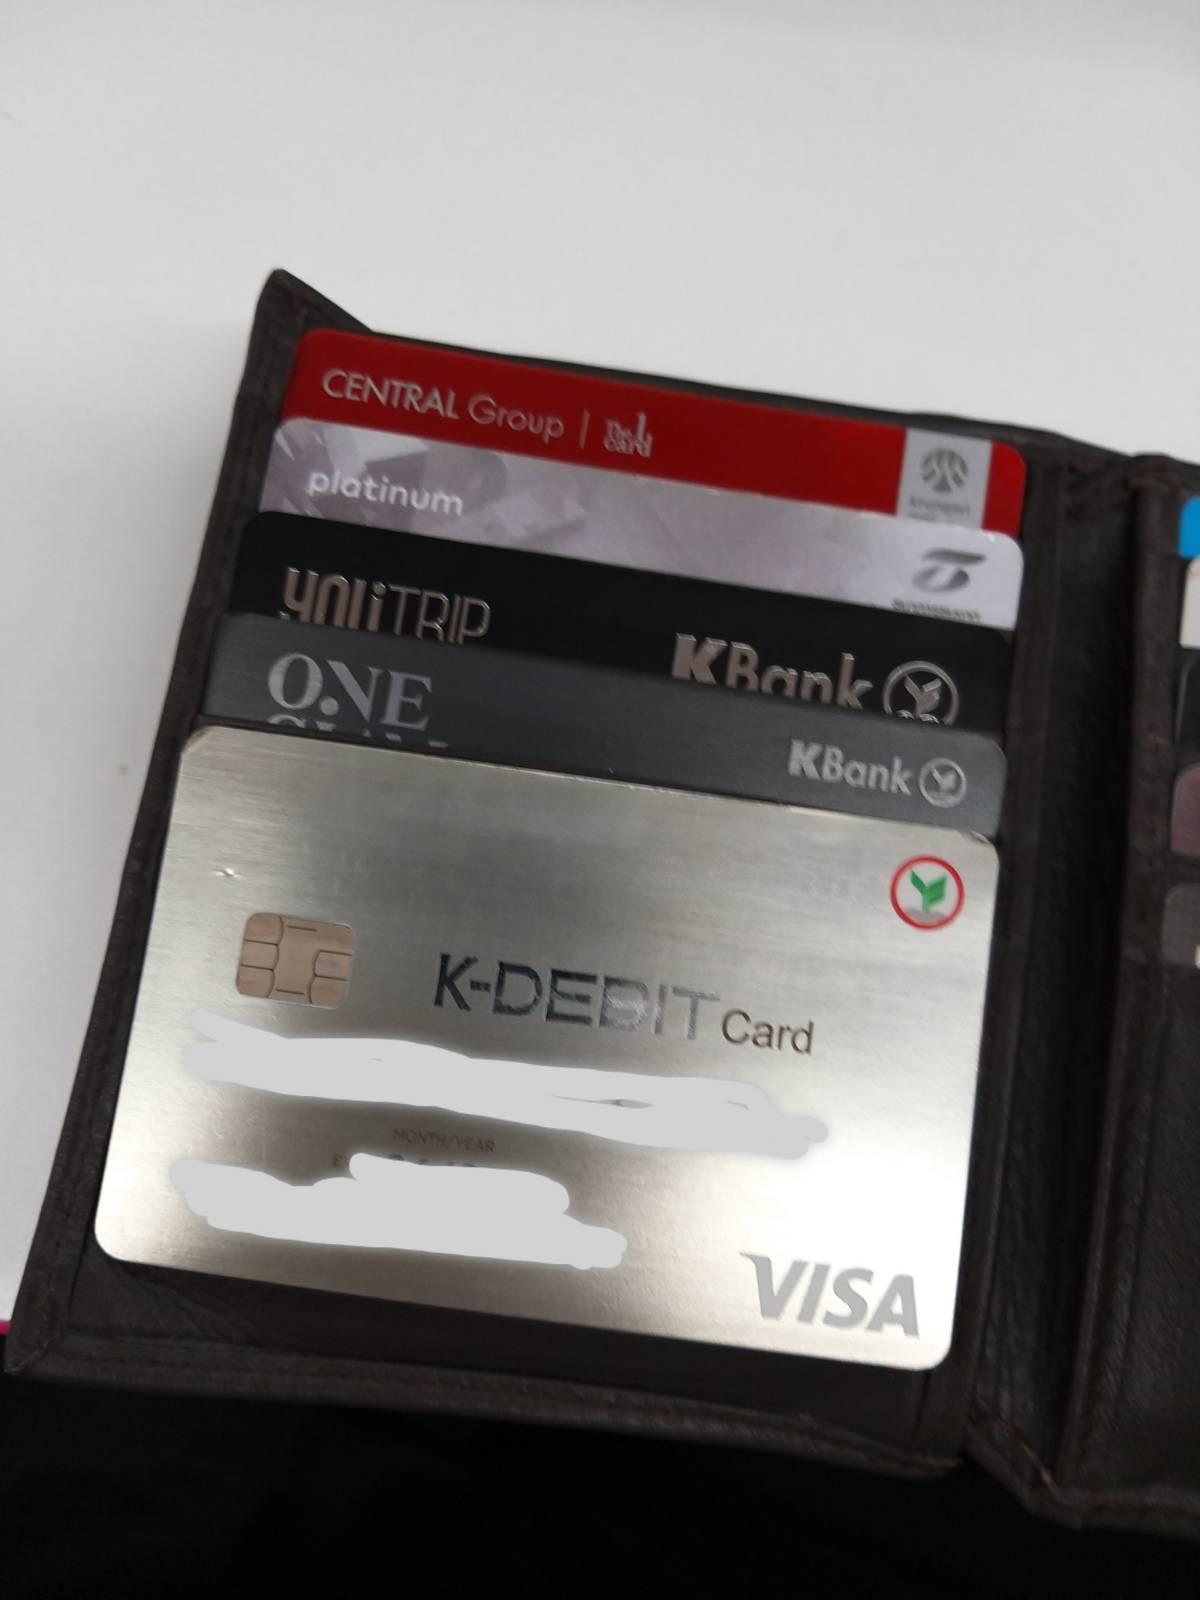 ถามเรื่องเปลี่ยนบัตรเดบิตกสิกร กับการทำบัตรเครดิตเป็นบัตร Atm ไปในตัวครับ -  Pantip